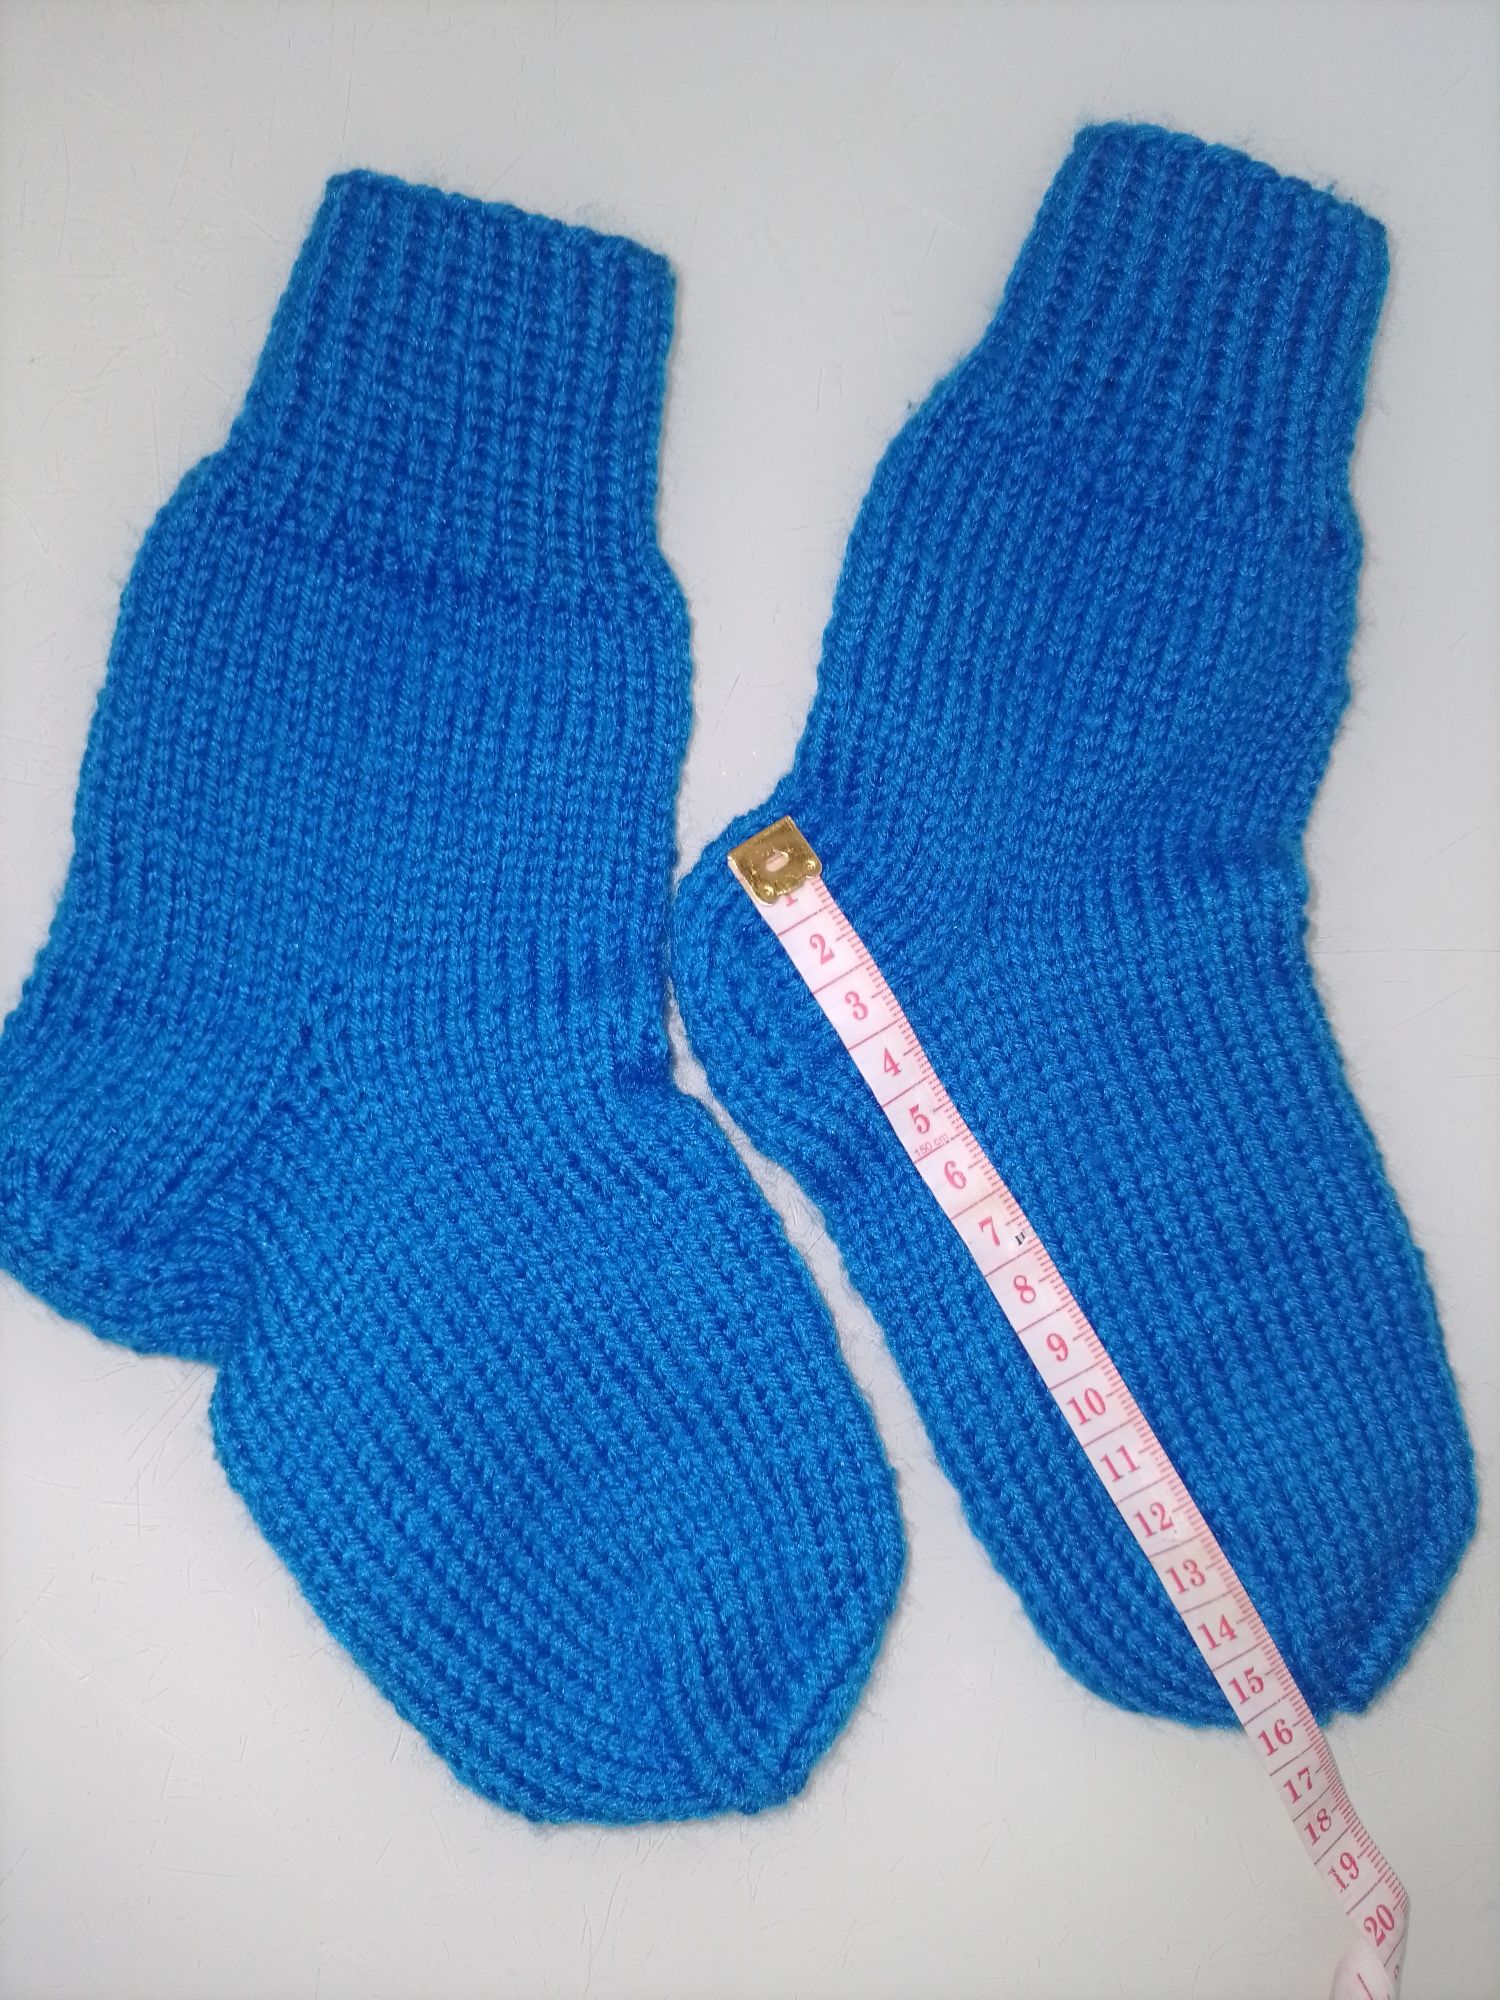 Дитячі в'язані шкарпетки. Hand made.